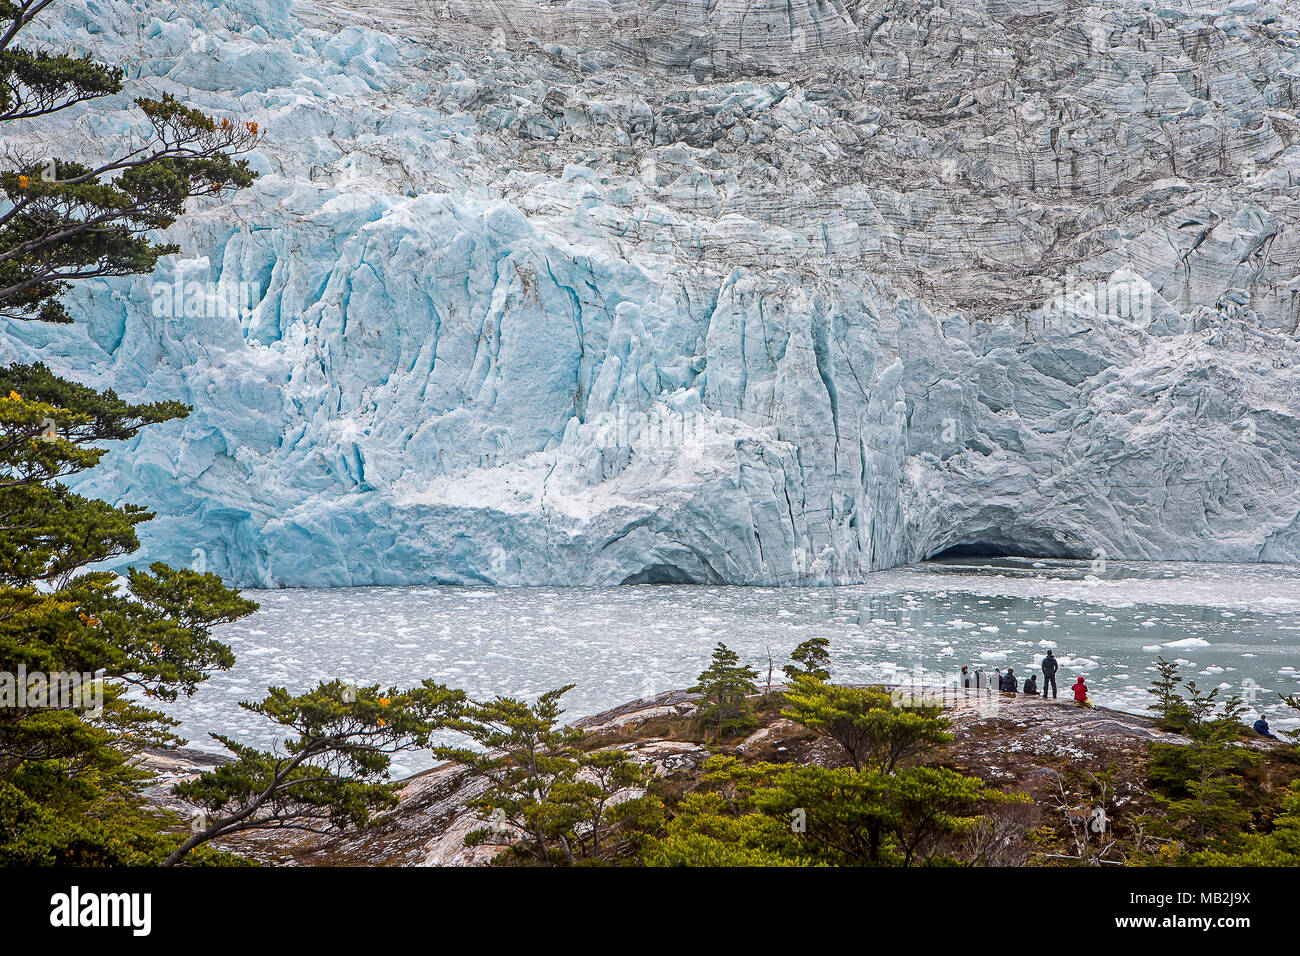 Les touristes, Glacier Pía, Canal de Beagle (nord-ouest), PN Alberto de Agostini, la Terre de Feu, Patagonie, Chili Banque D'Images